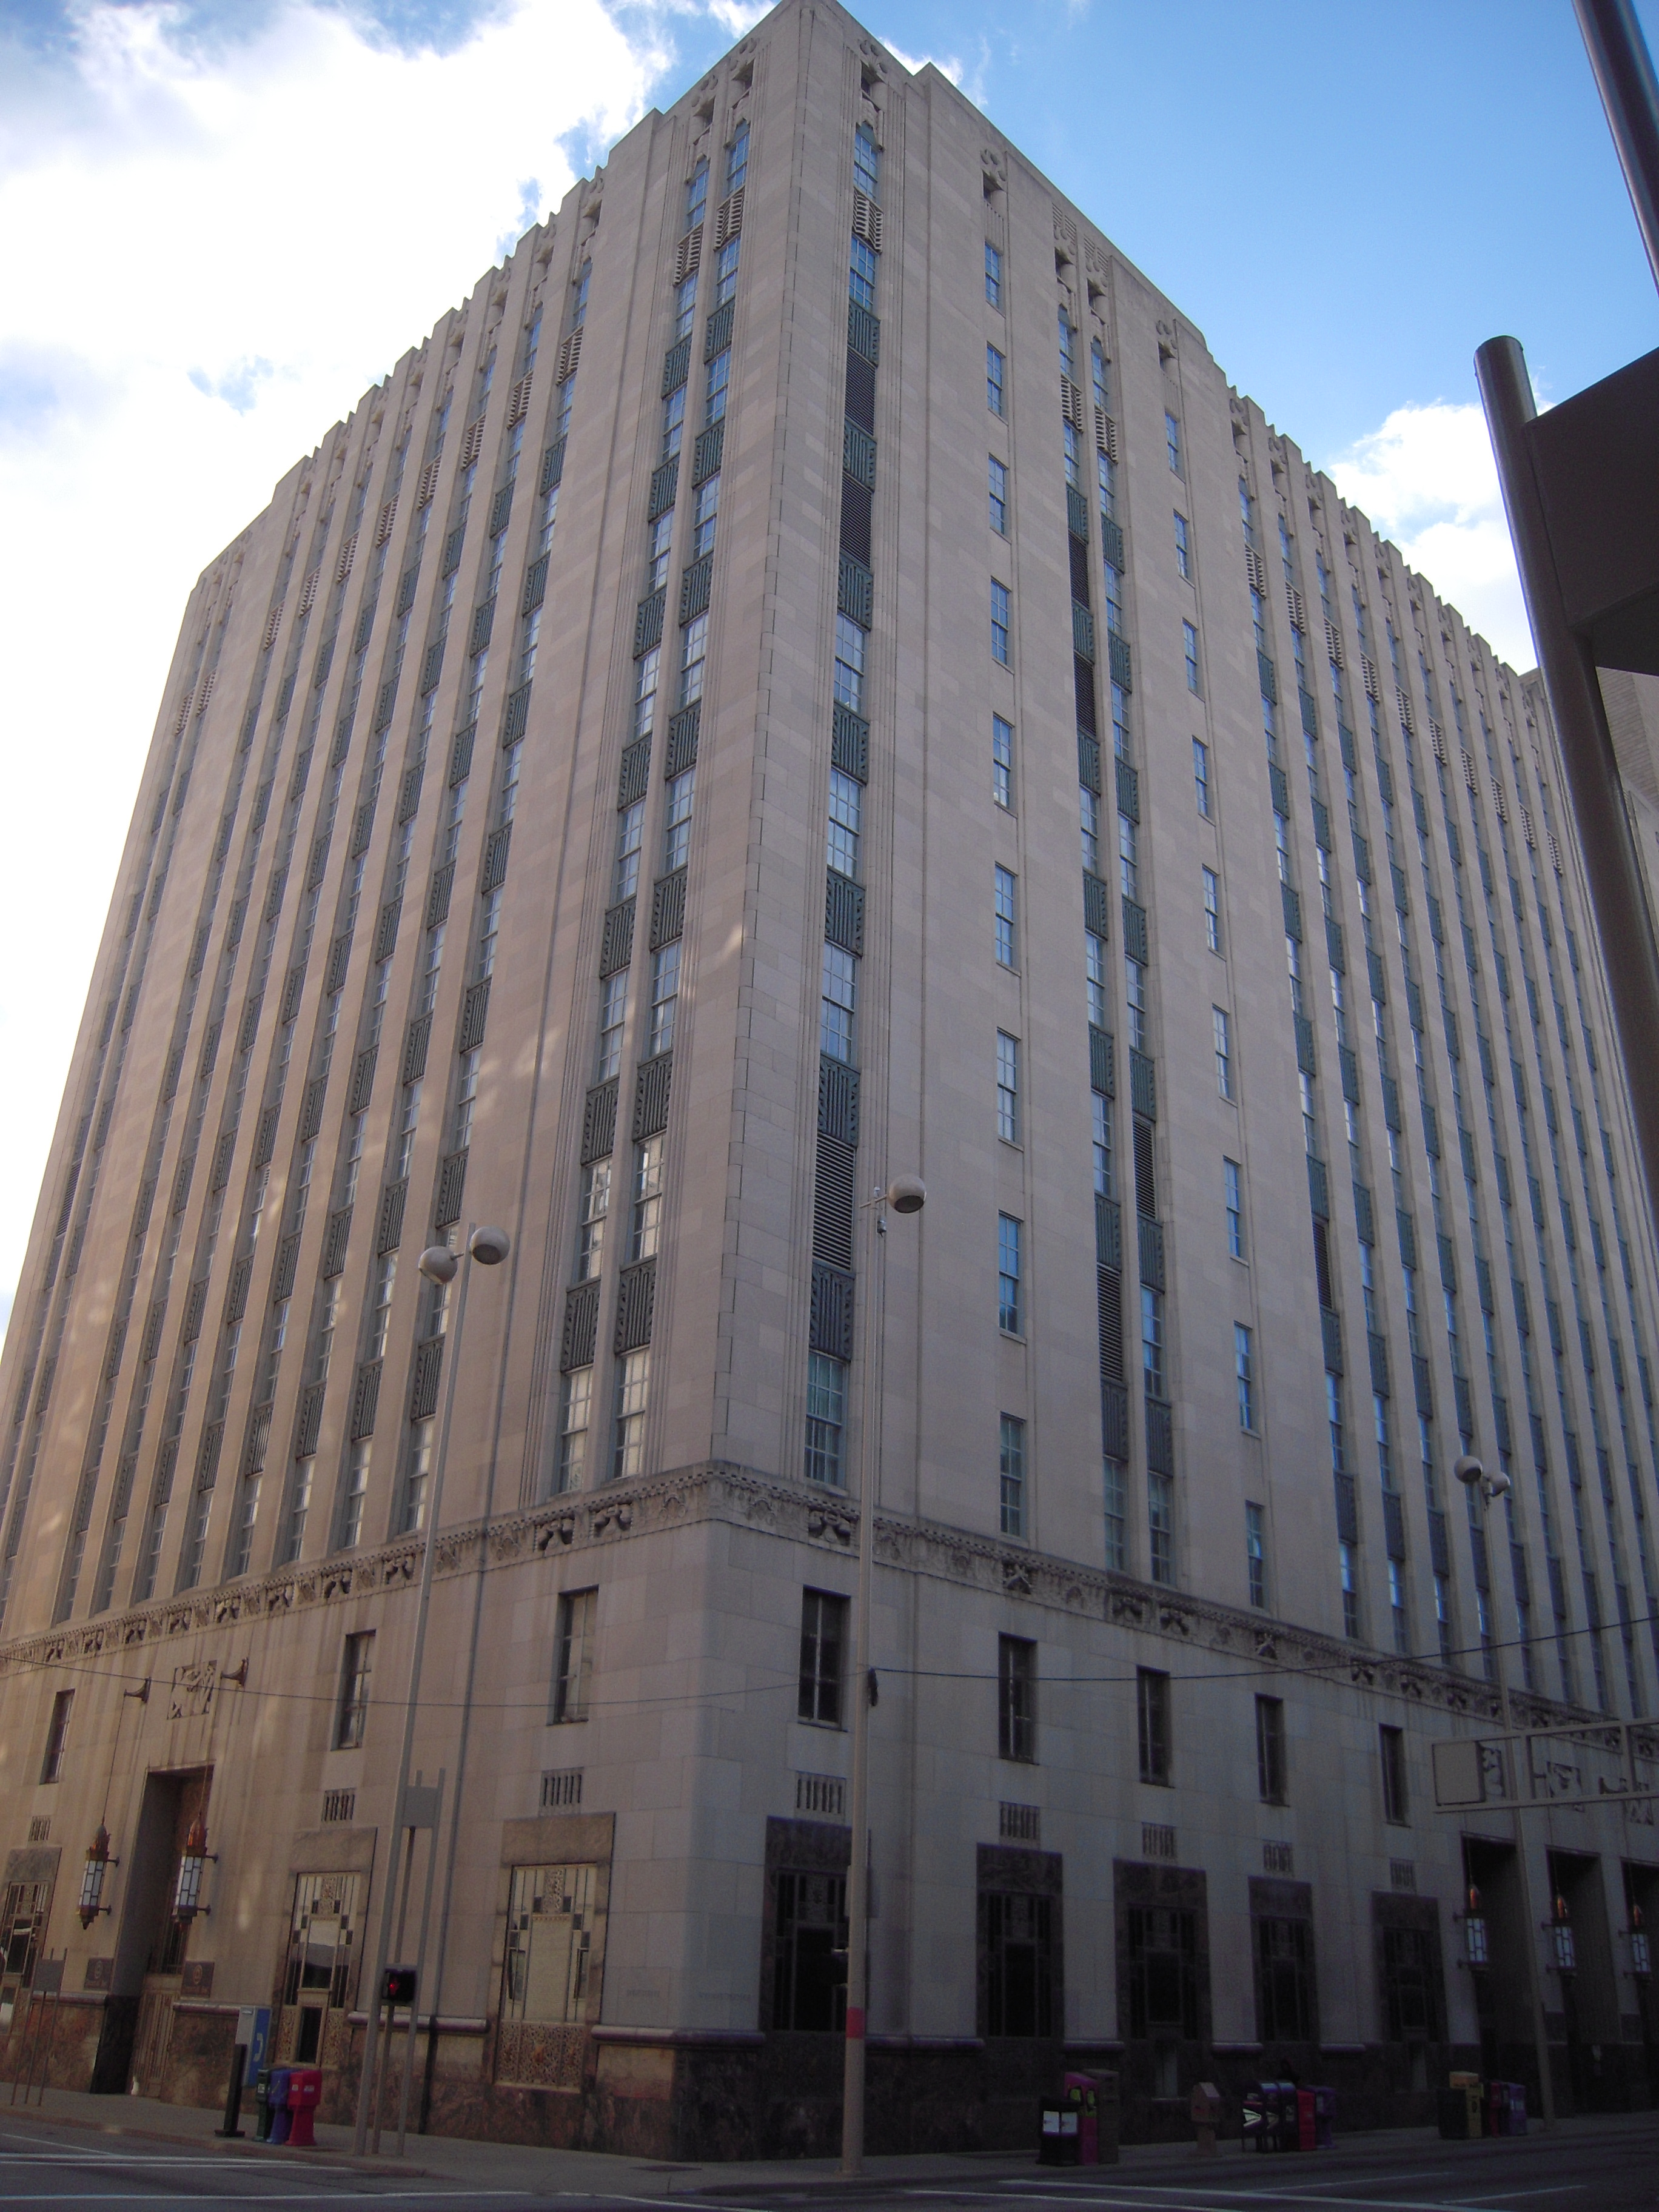 Cincinnati Bell Building - Cincinnati, OH